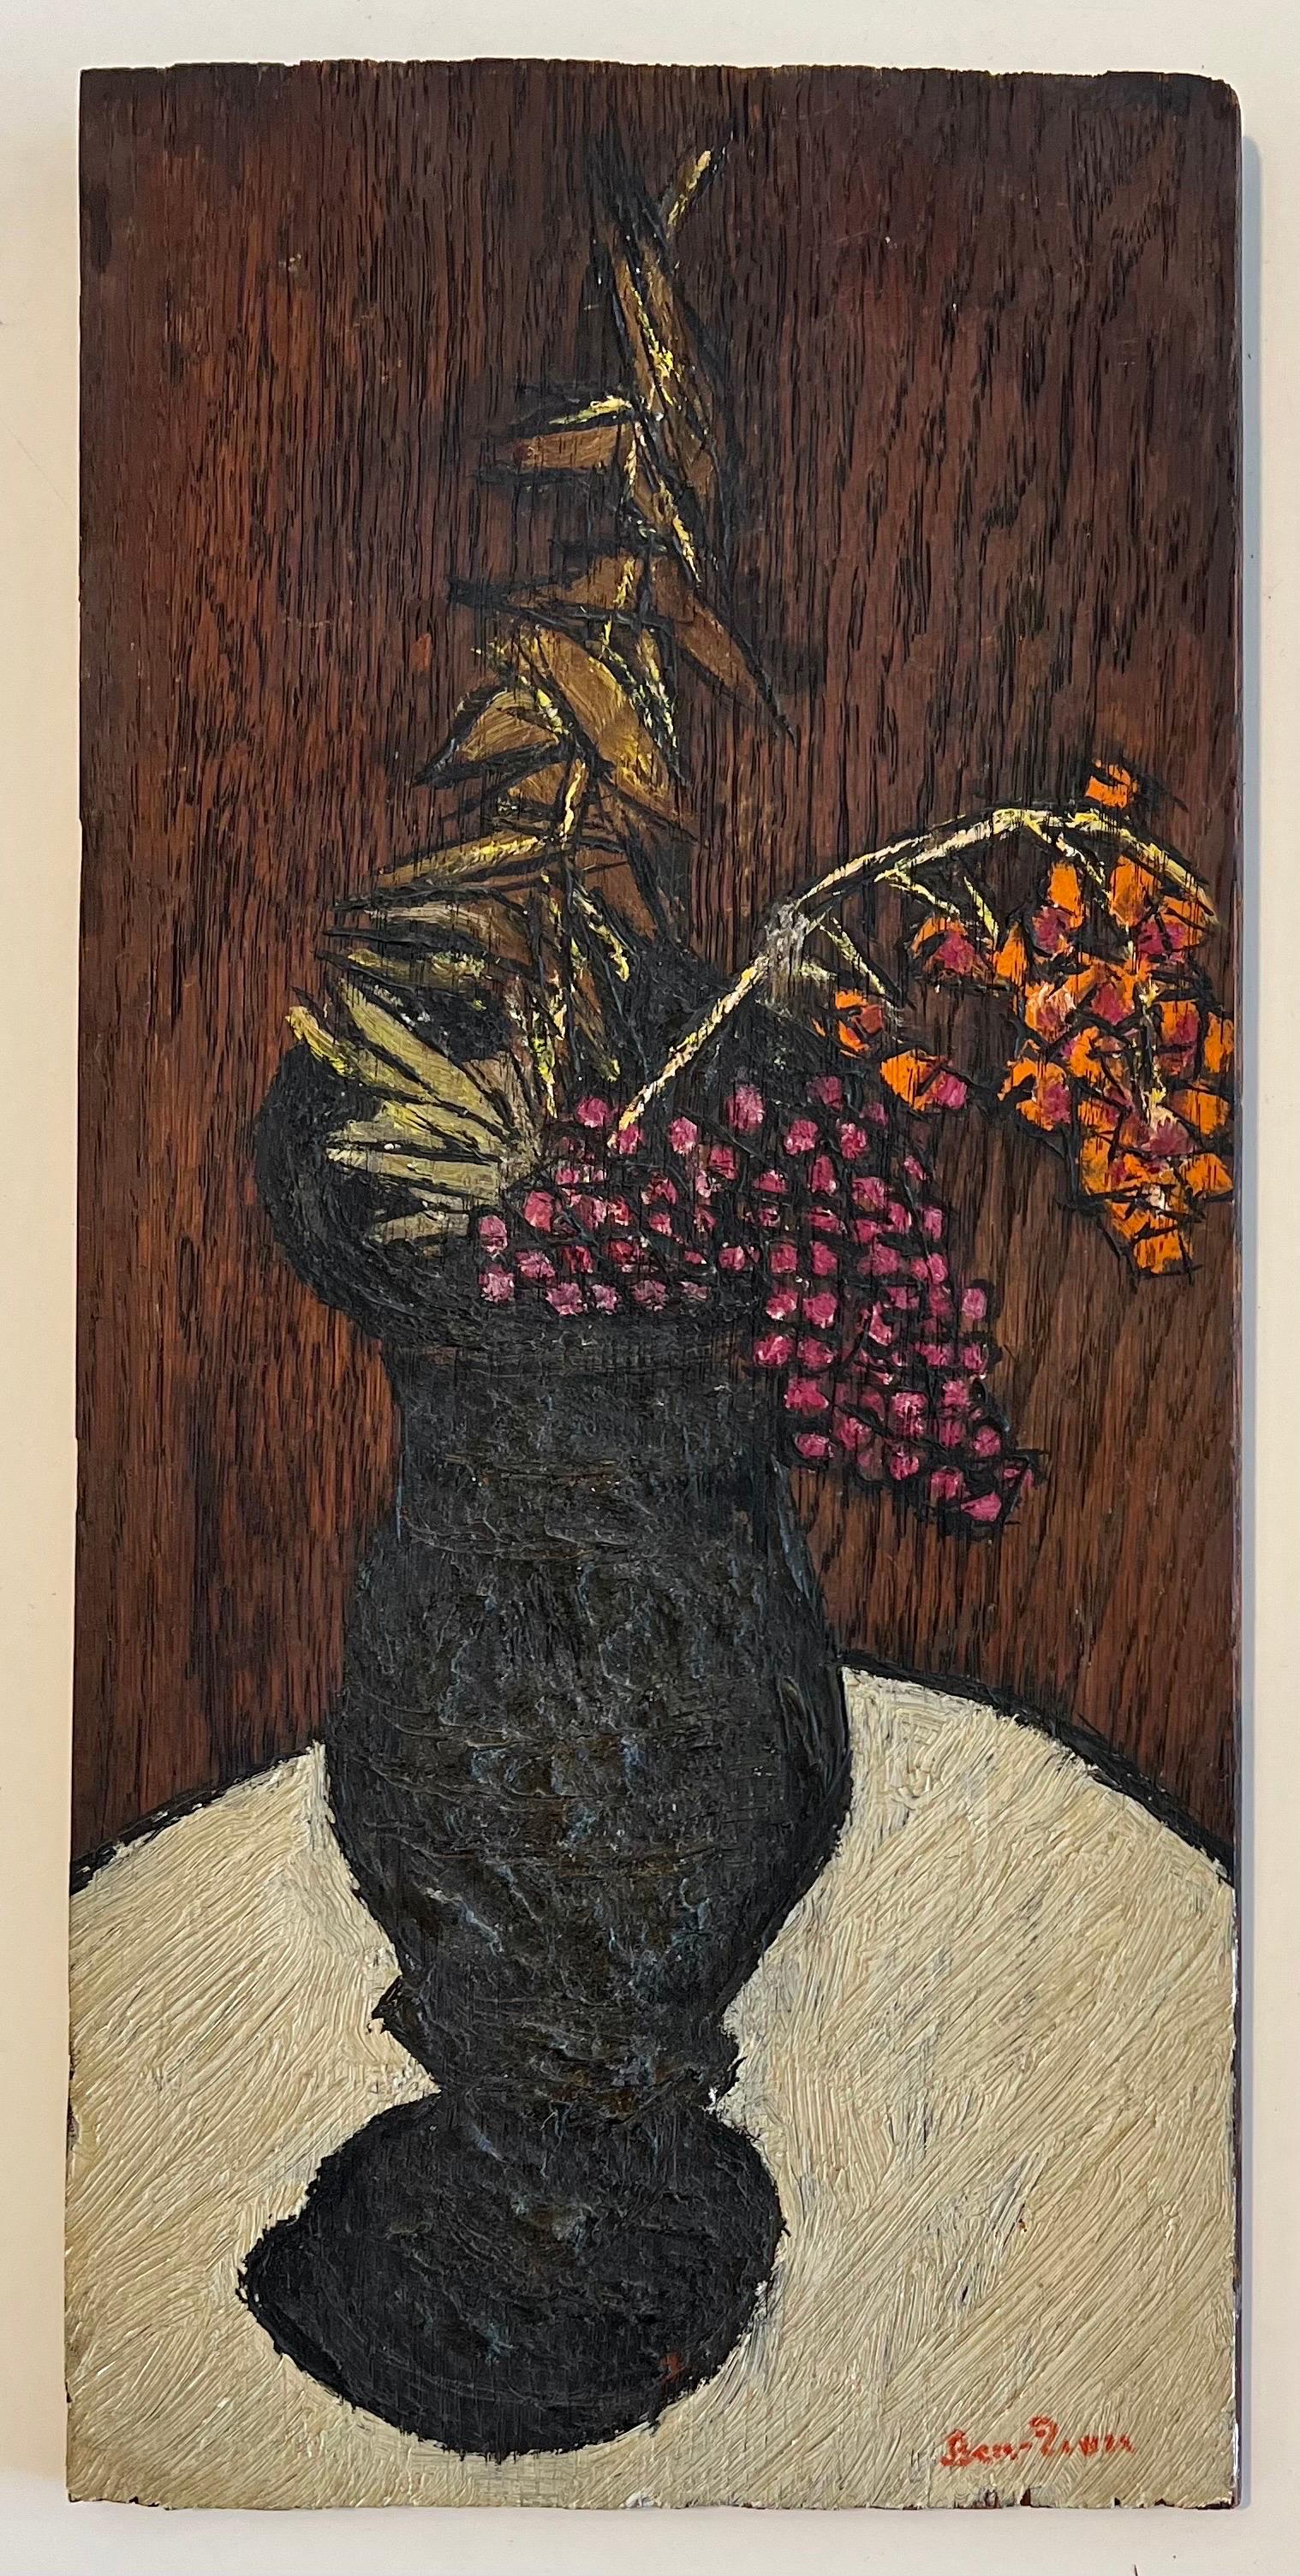 Ben-Zion (1897-1987) 
Blumenstück mit schwarzer Vase
Öl auf Karton, handsigniert  Ben-Zion